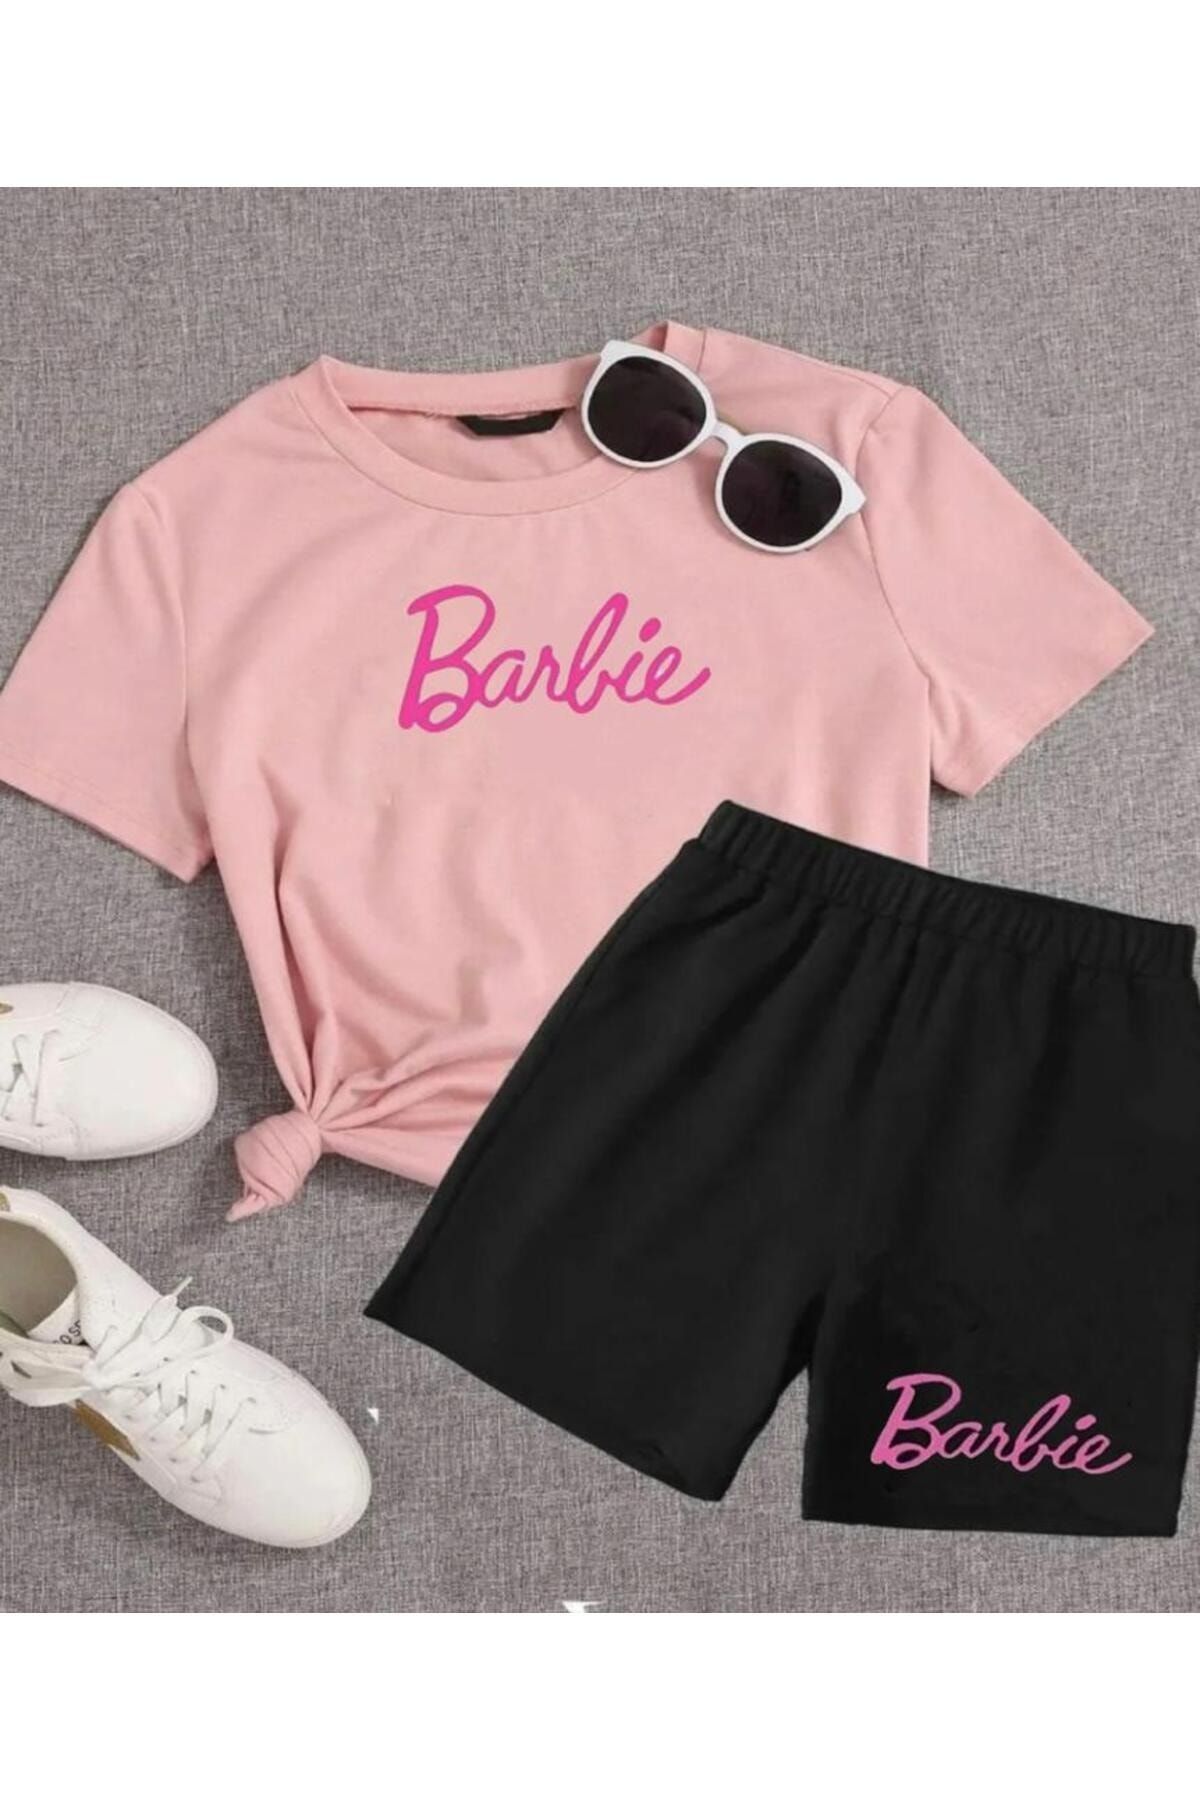 Renna Mood Barbie Baskılı Kız/Erkek Çocuk Şort-T-Shirt Takım